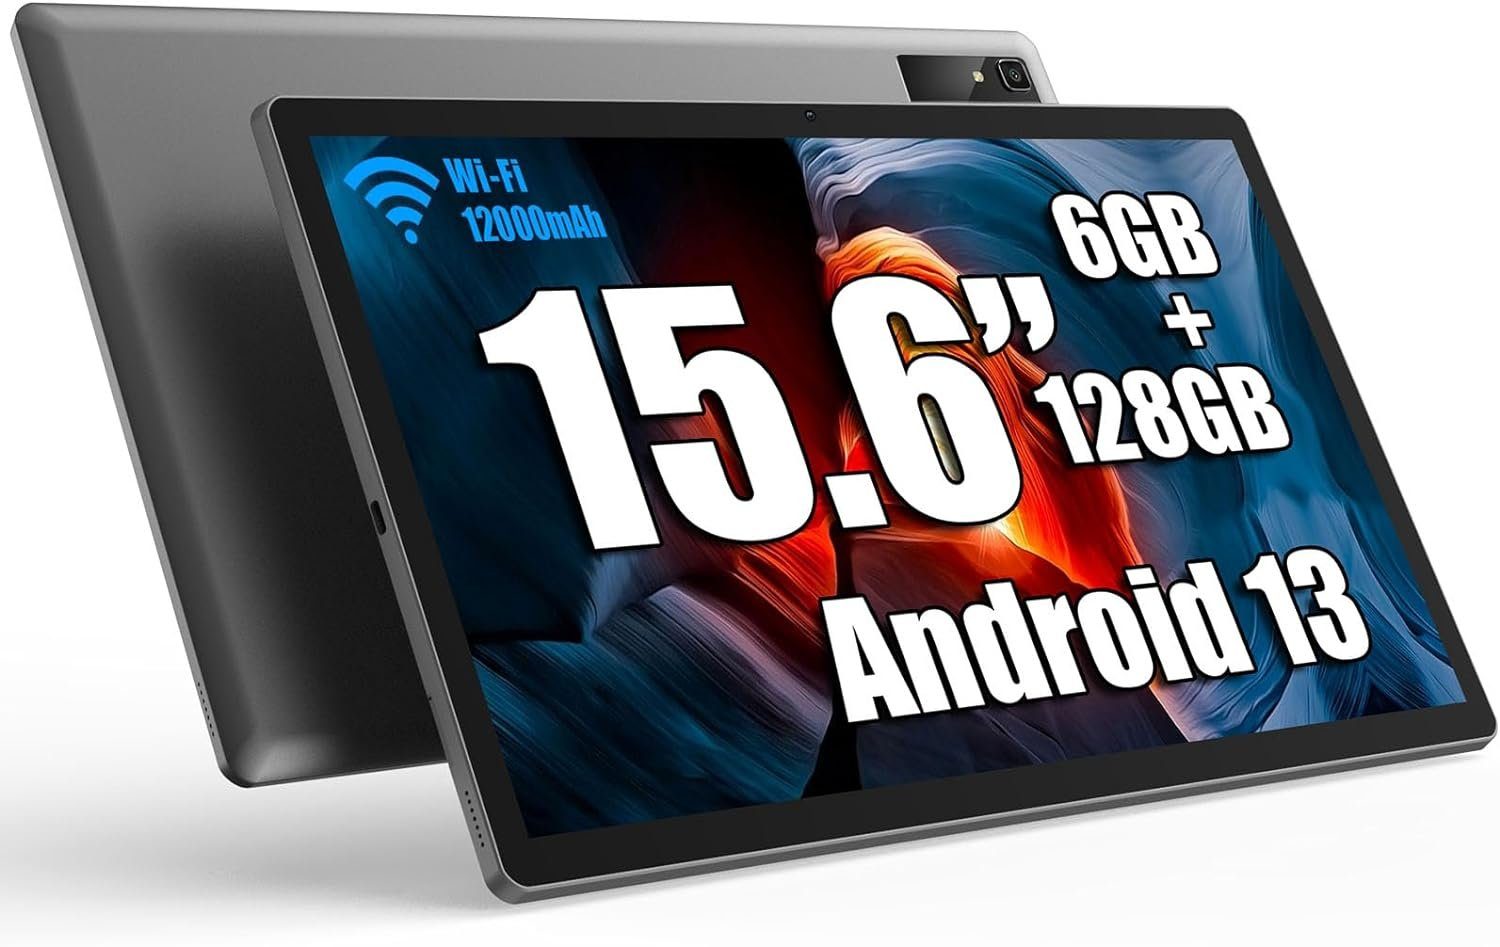 MESWAO Großbild-Erlebnis Tablet (15,6", 128 GB, Android 13, 2,4G+5G, mit 1920*1080 IPS HD Großes Display 12000mAh Ideal für Produktivität)